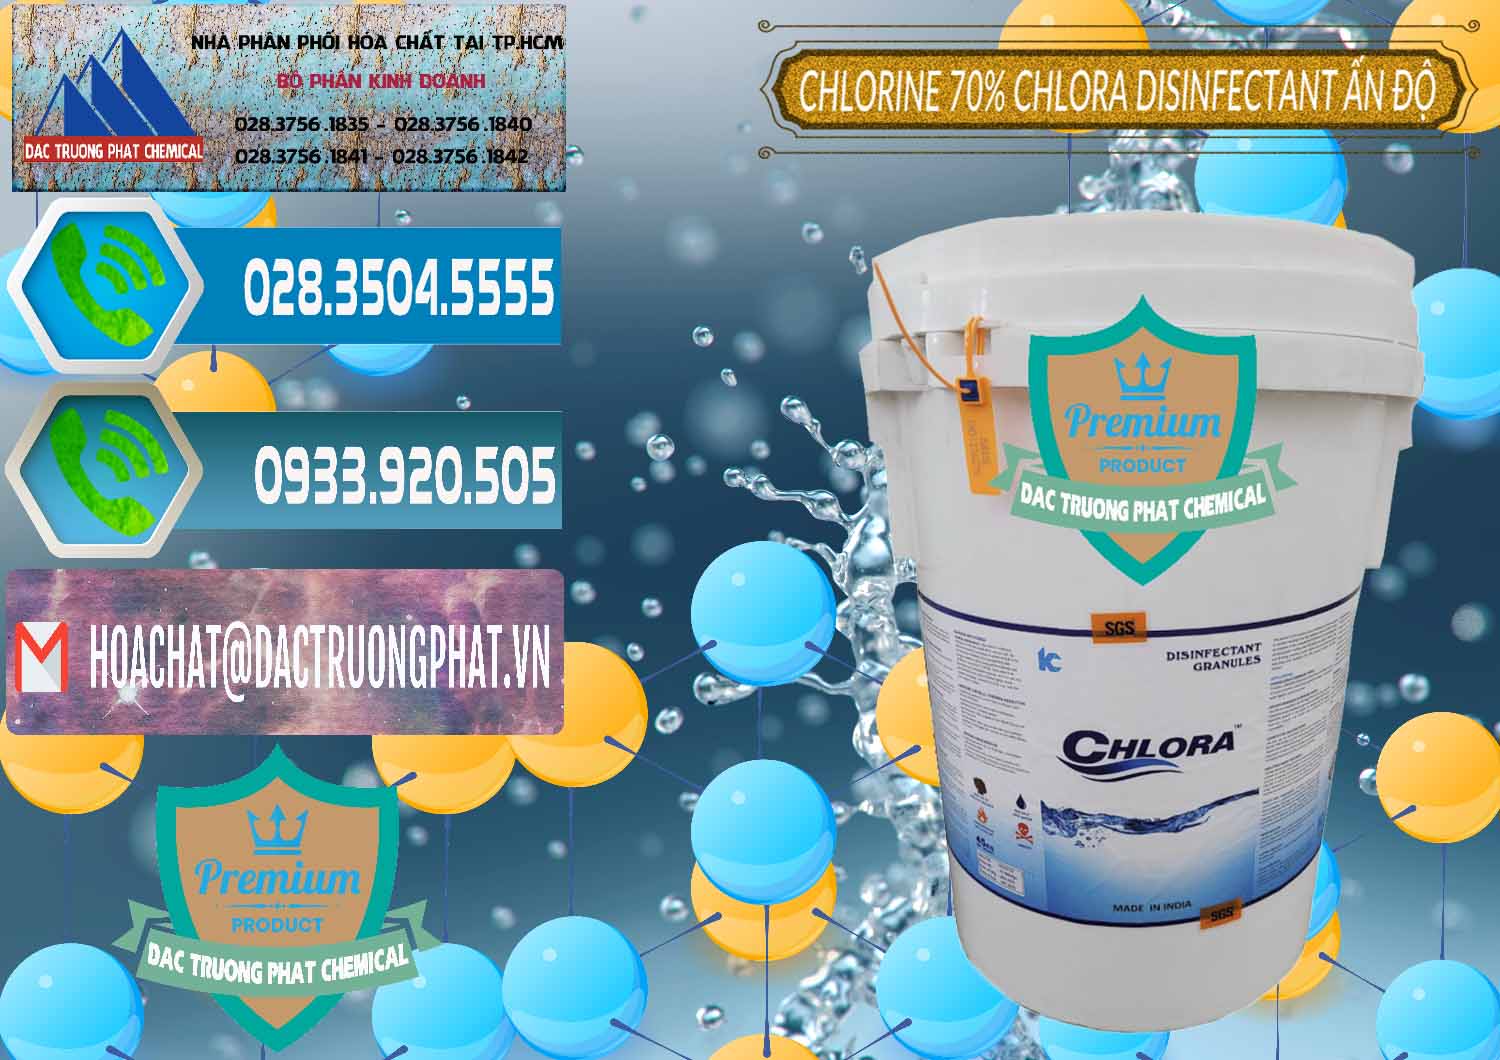 Công ty bán ( cung cấp ) Chlorine – Clorin 70% Chlora Disinfectant Ấn Độ India - 0213 - Nơi chuyên kinh doanh ( phân phối ) hóa chất tại TP.HCM - congtyhoachat.net